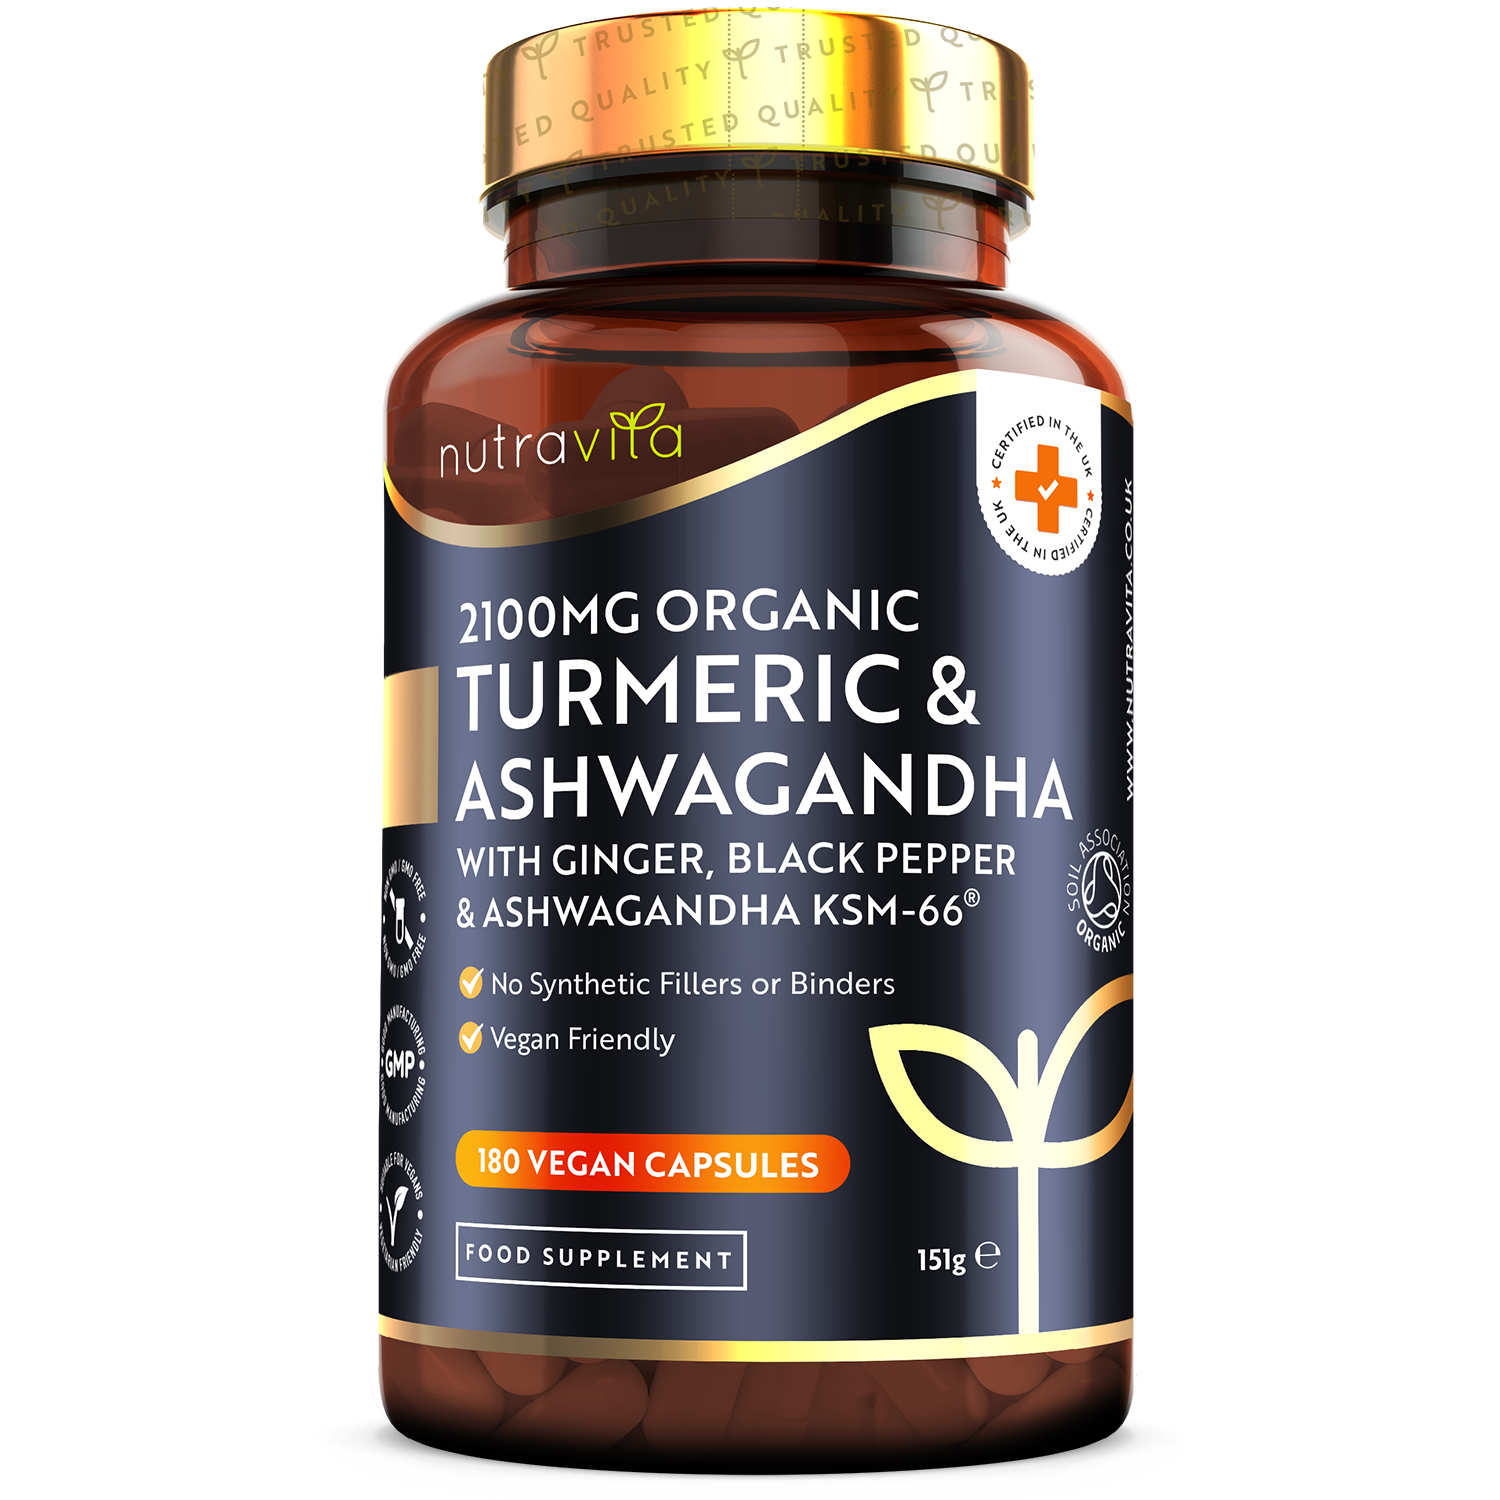 Organic Turmeric 2100mg & Ashwagandha KSM-66 ® with Ginger & Black Pepper - 180 Vegan Capsules